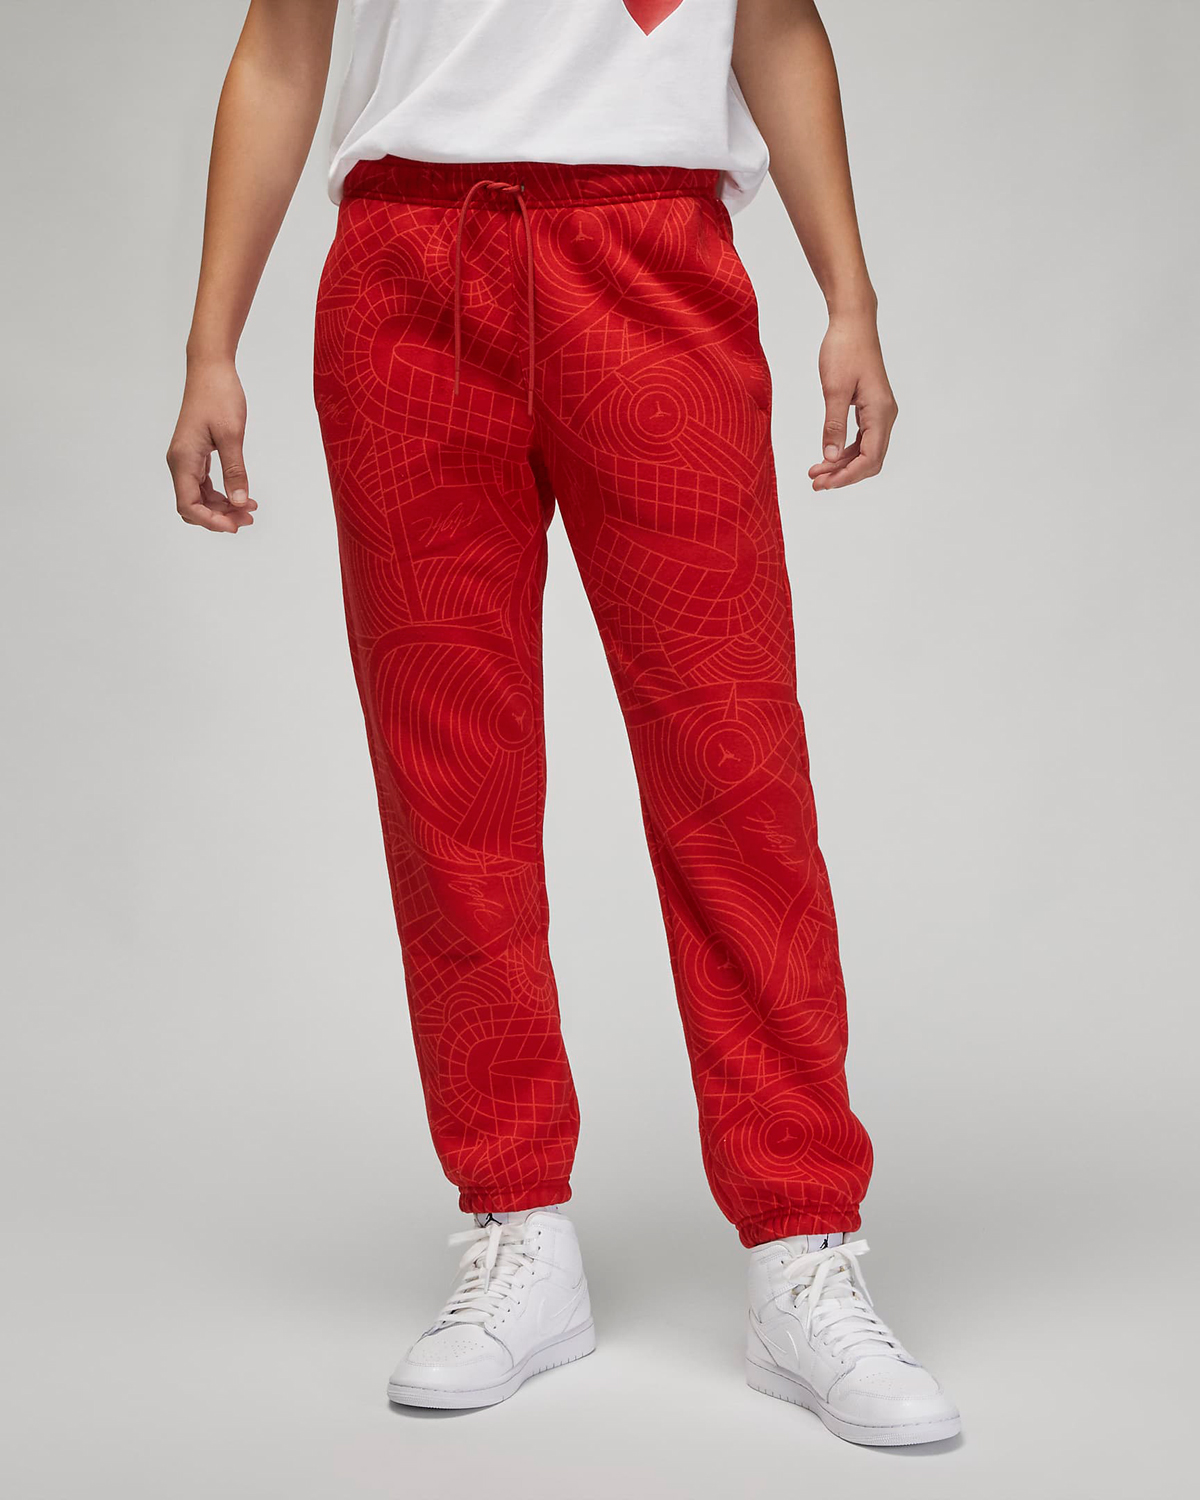 Jordan-Womens-Brooklyn-Printed-Fleece-Pants-Gym-Red